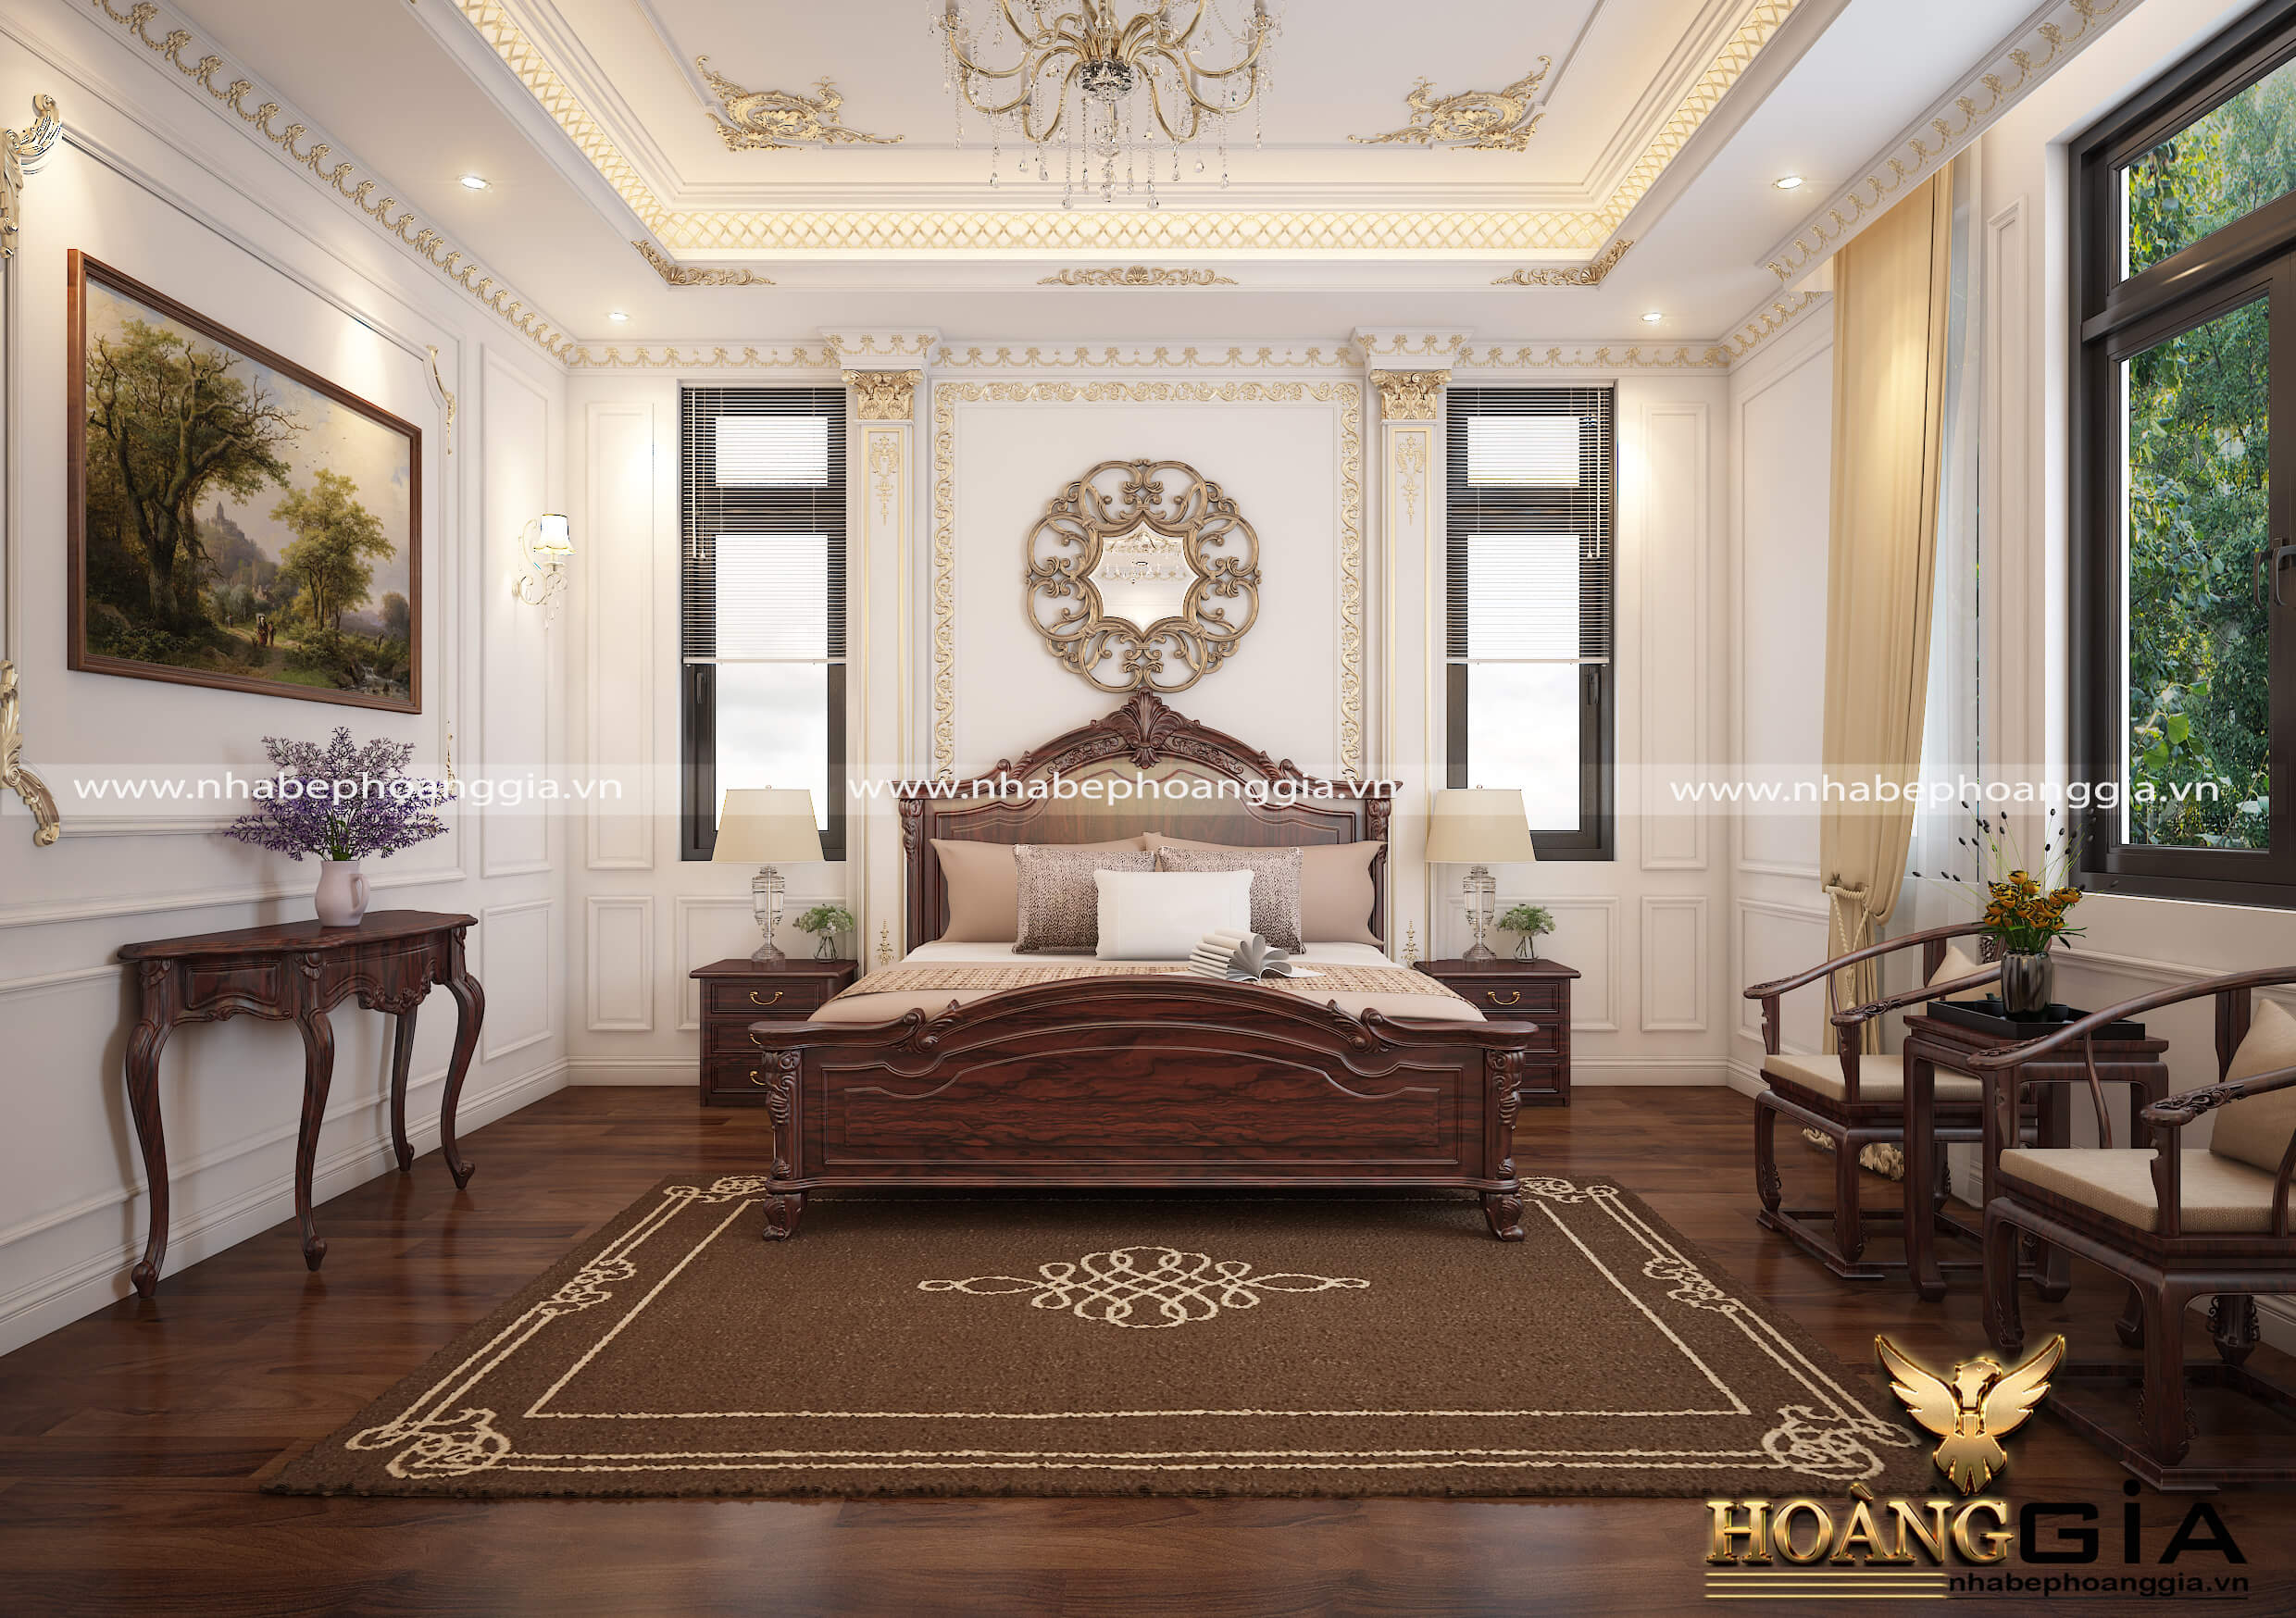 Không gian nội thất phòng ngủ tân cổ điển với chất liệu gỗ tự nhiên sang trọng